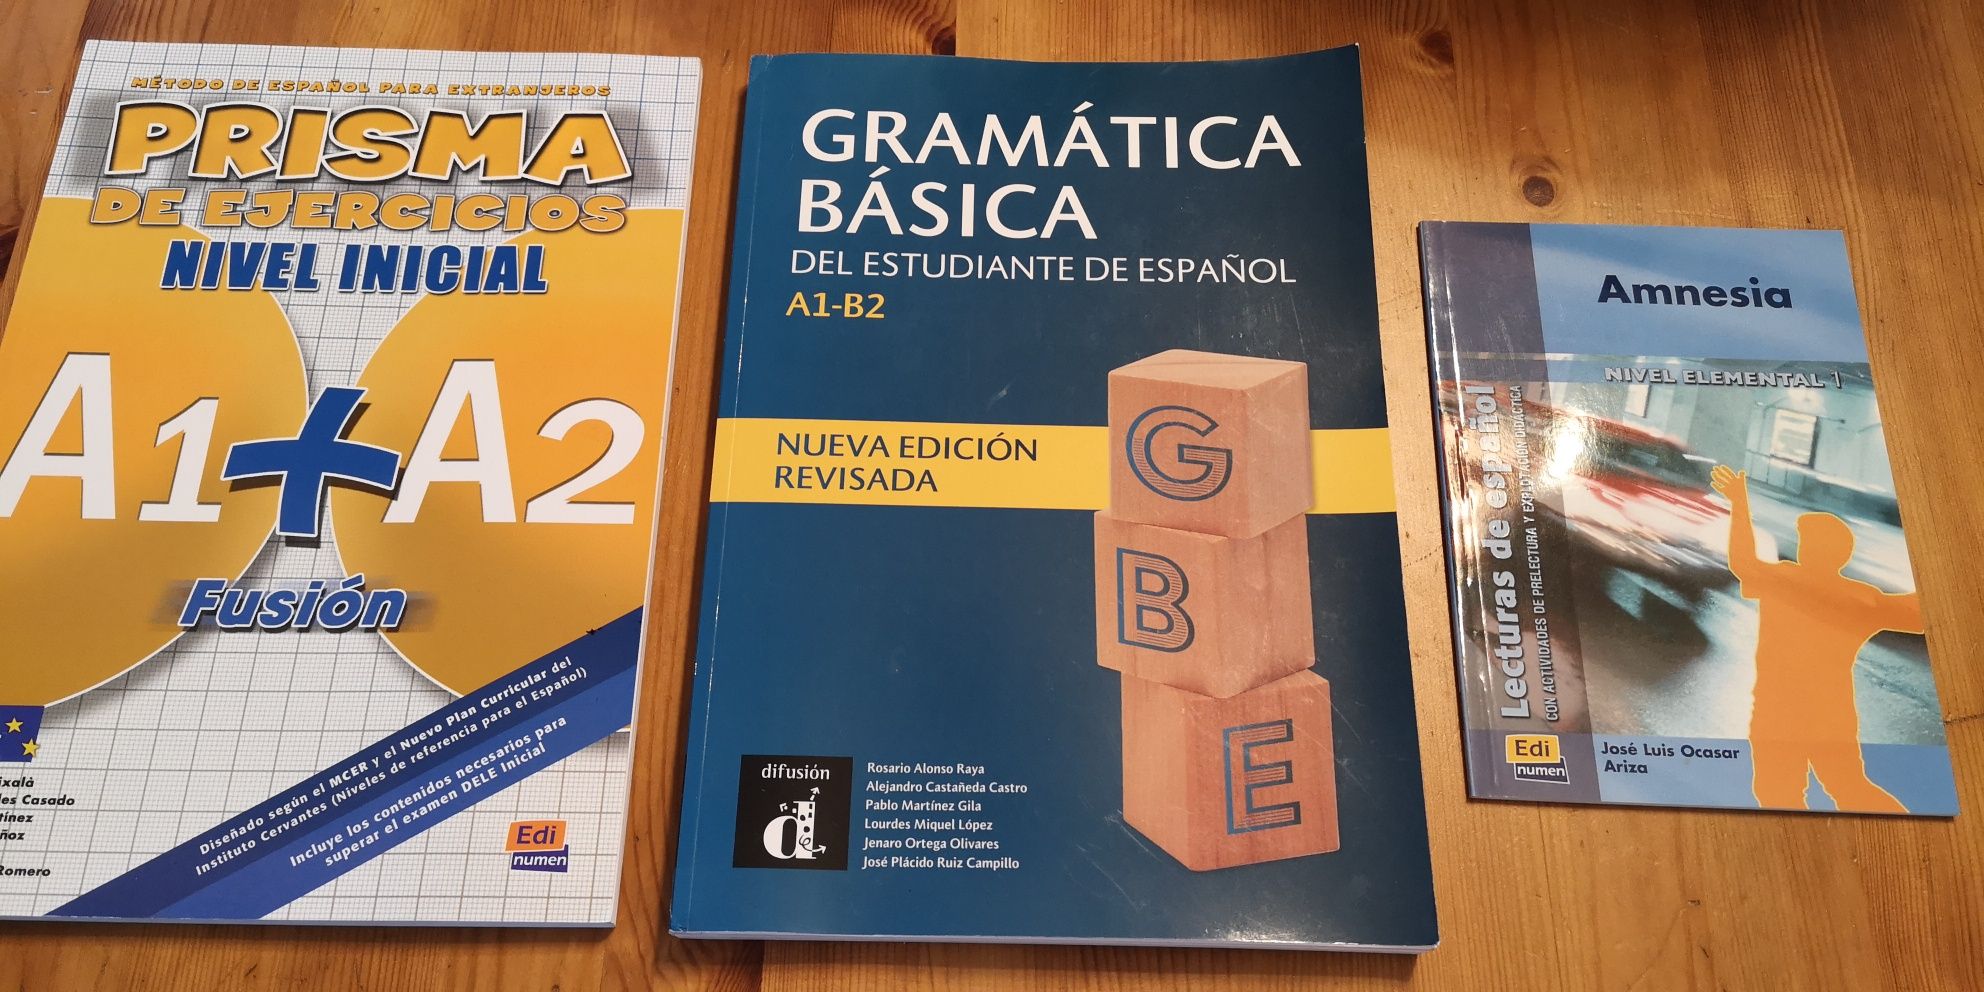 3 Livros Espanhol: Prisma de ejercicios, gramática básica espanol e a